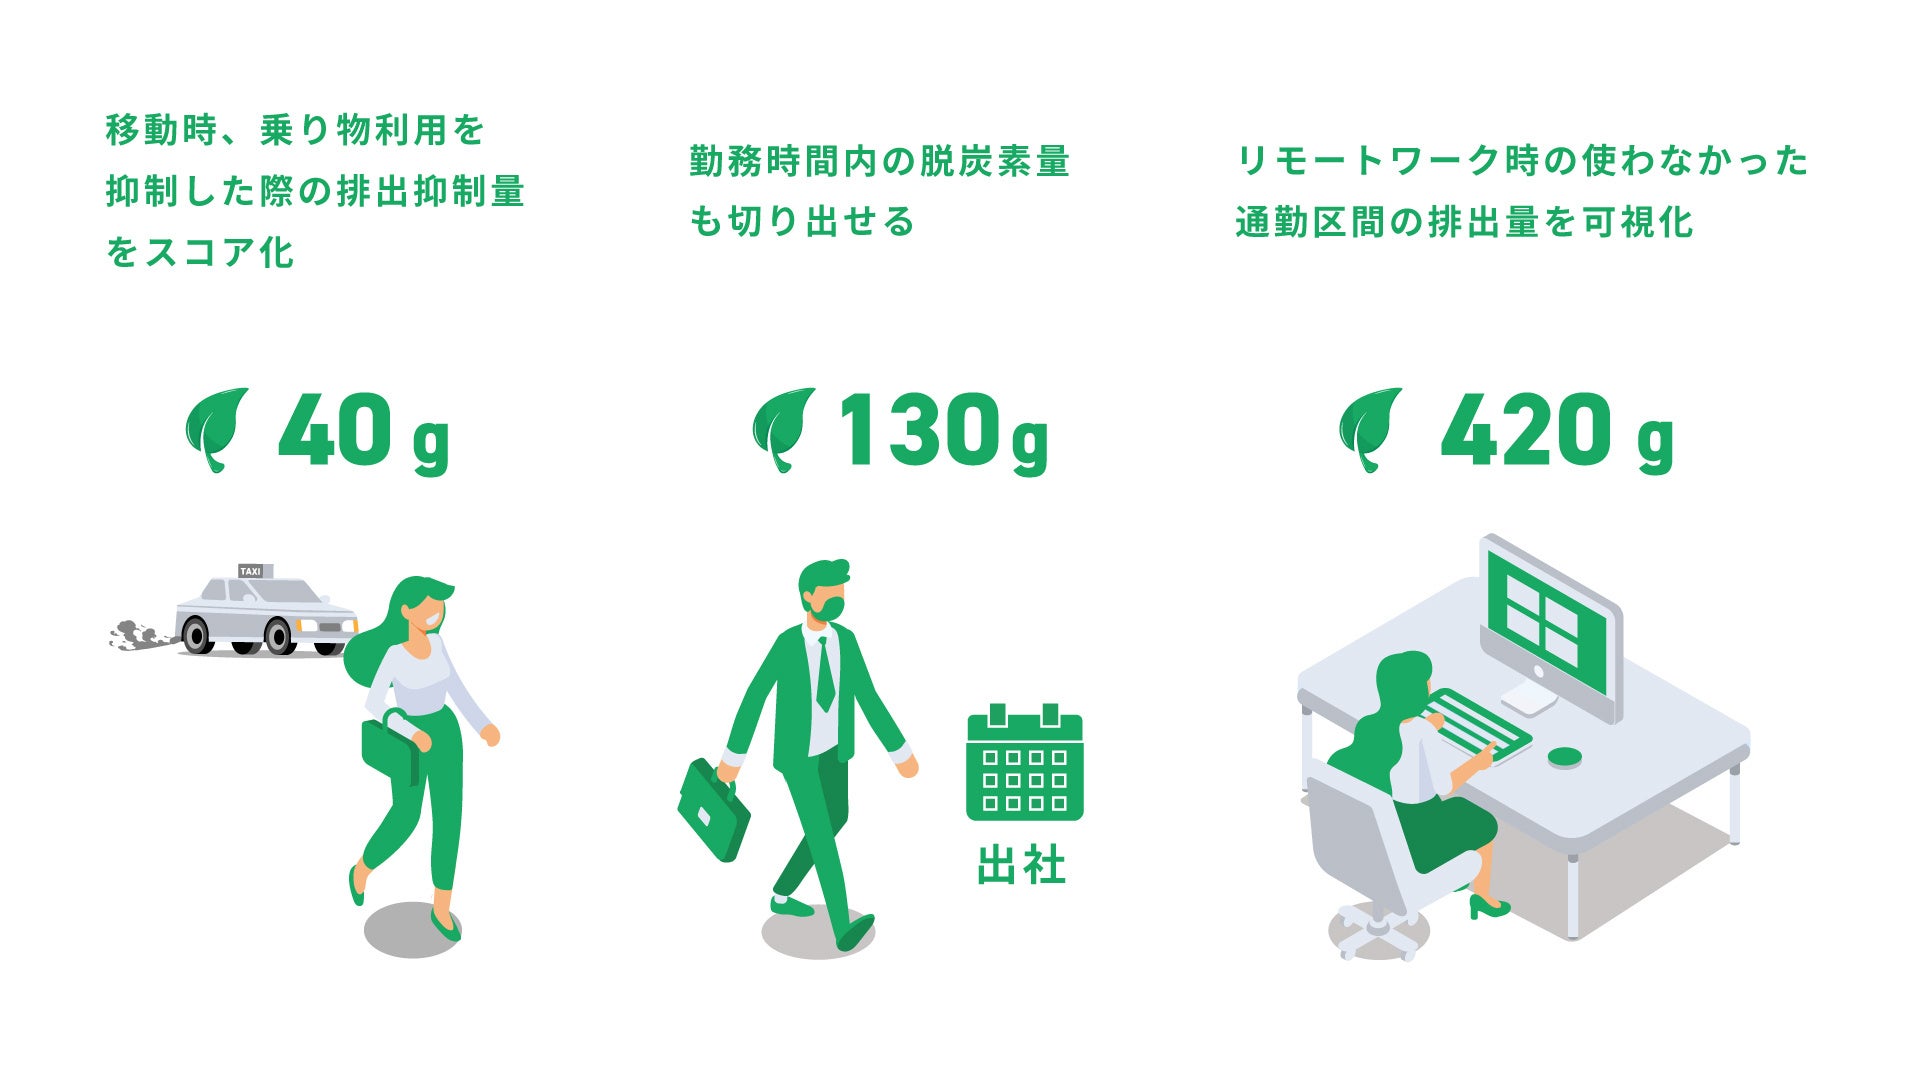 埼玉県入間市でスマホアプリ「SPOBY」を用いた市民による脱炭素活動の取り組みが開始 / 23年1月12日スタートのサブ画像2